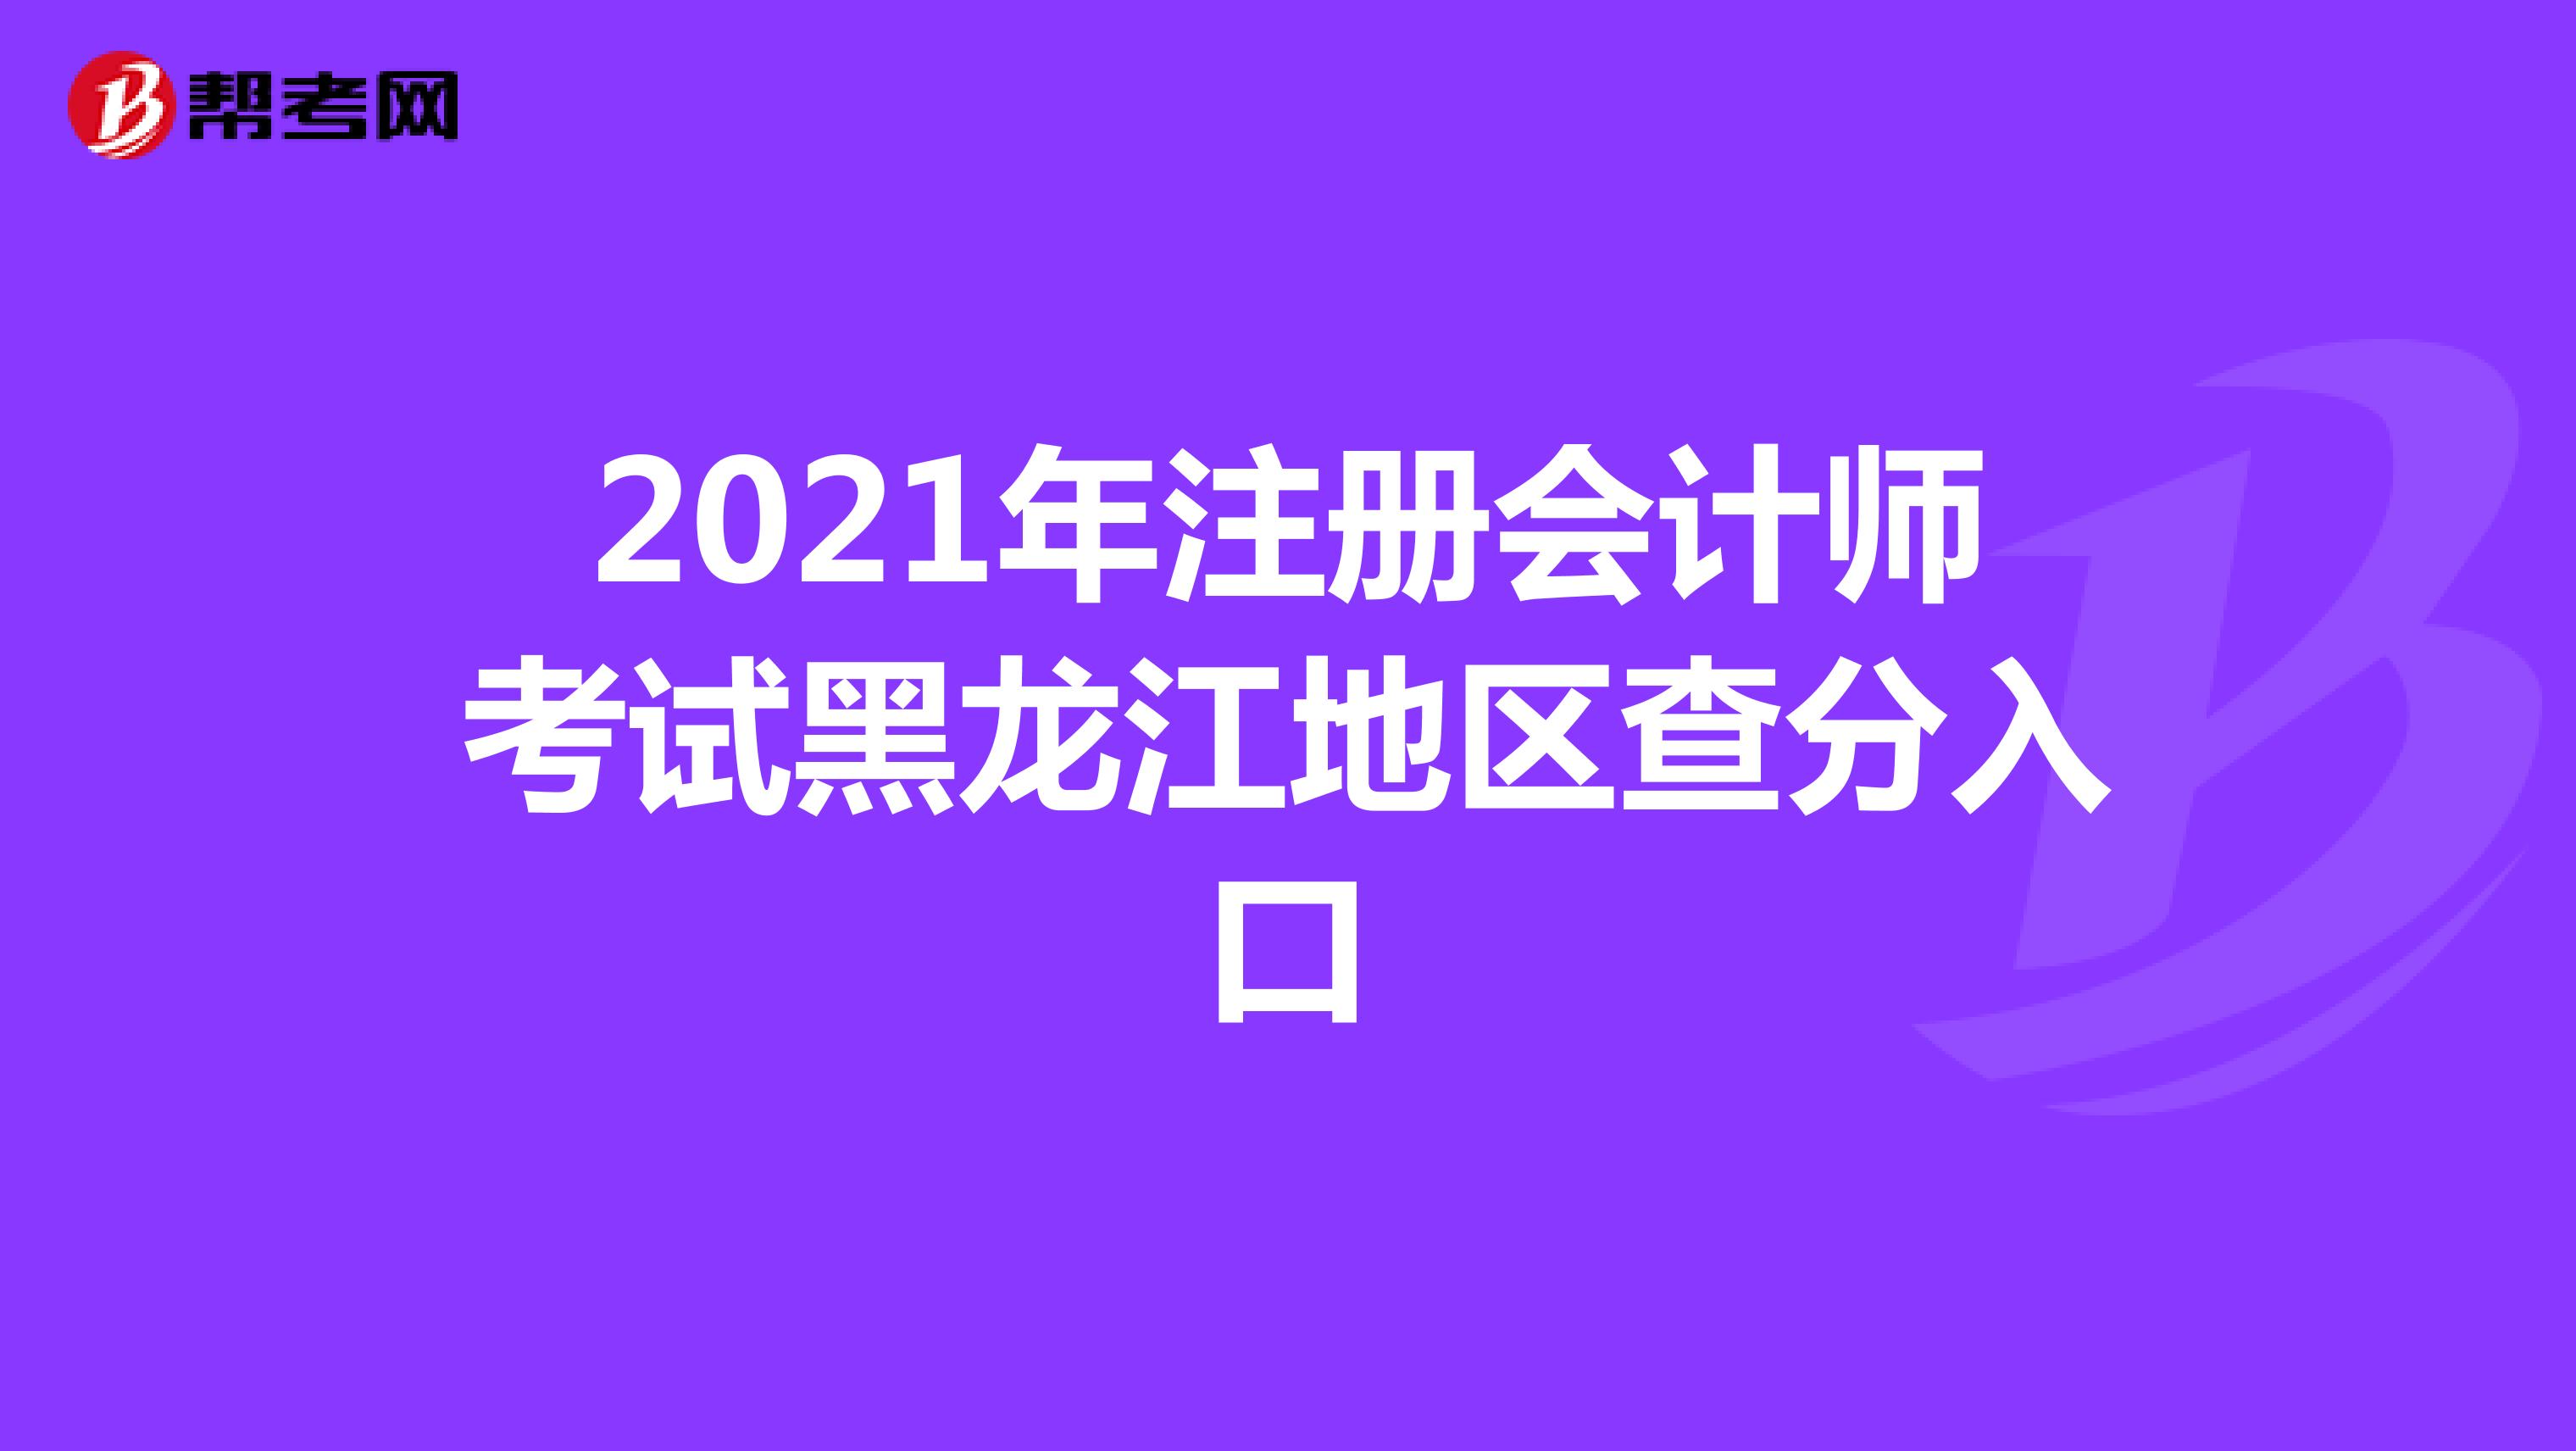 2021年注册会计师考试黑龙江地区查分入口